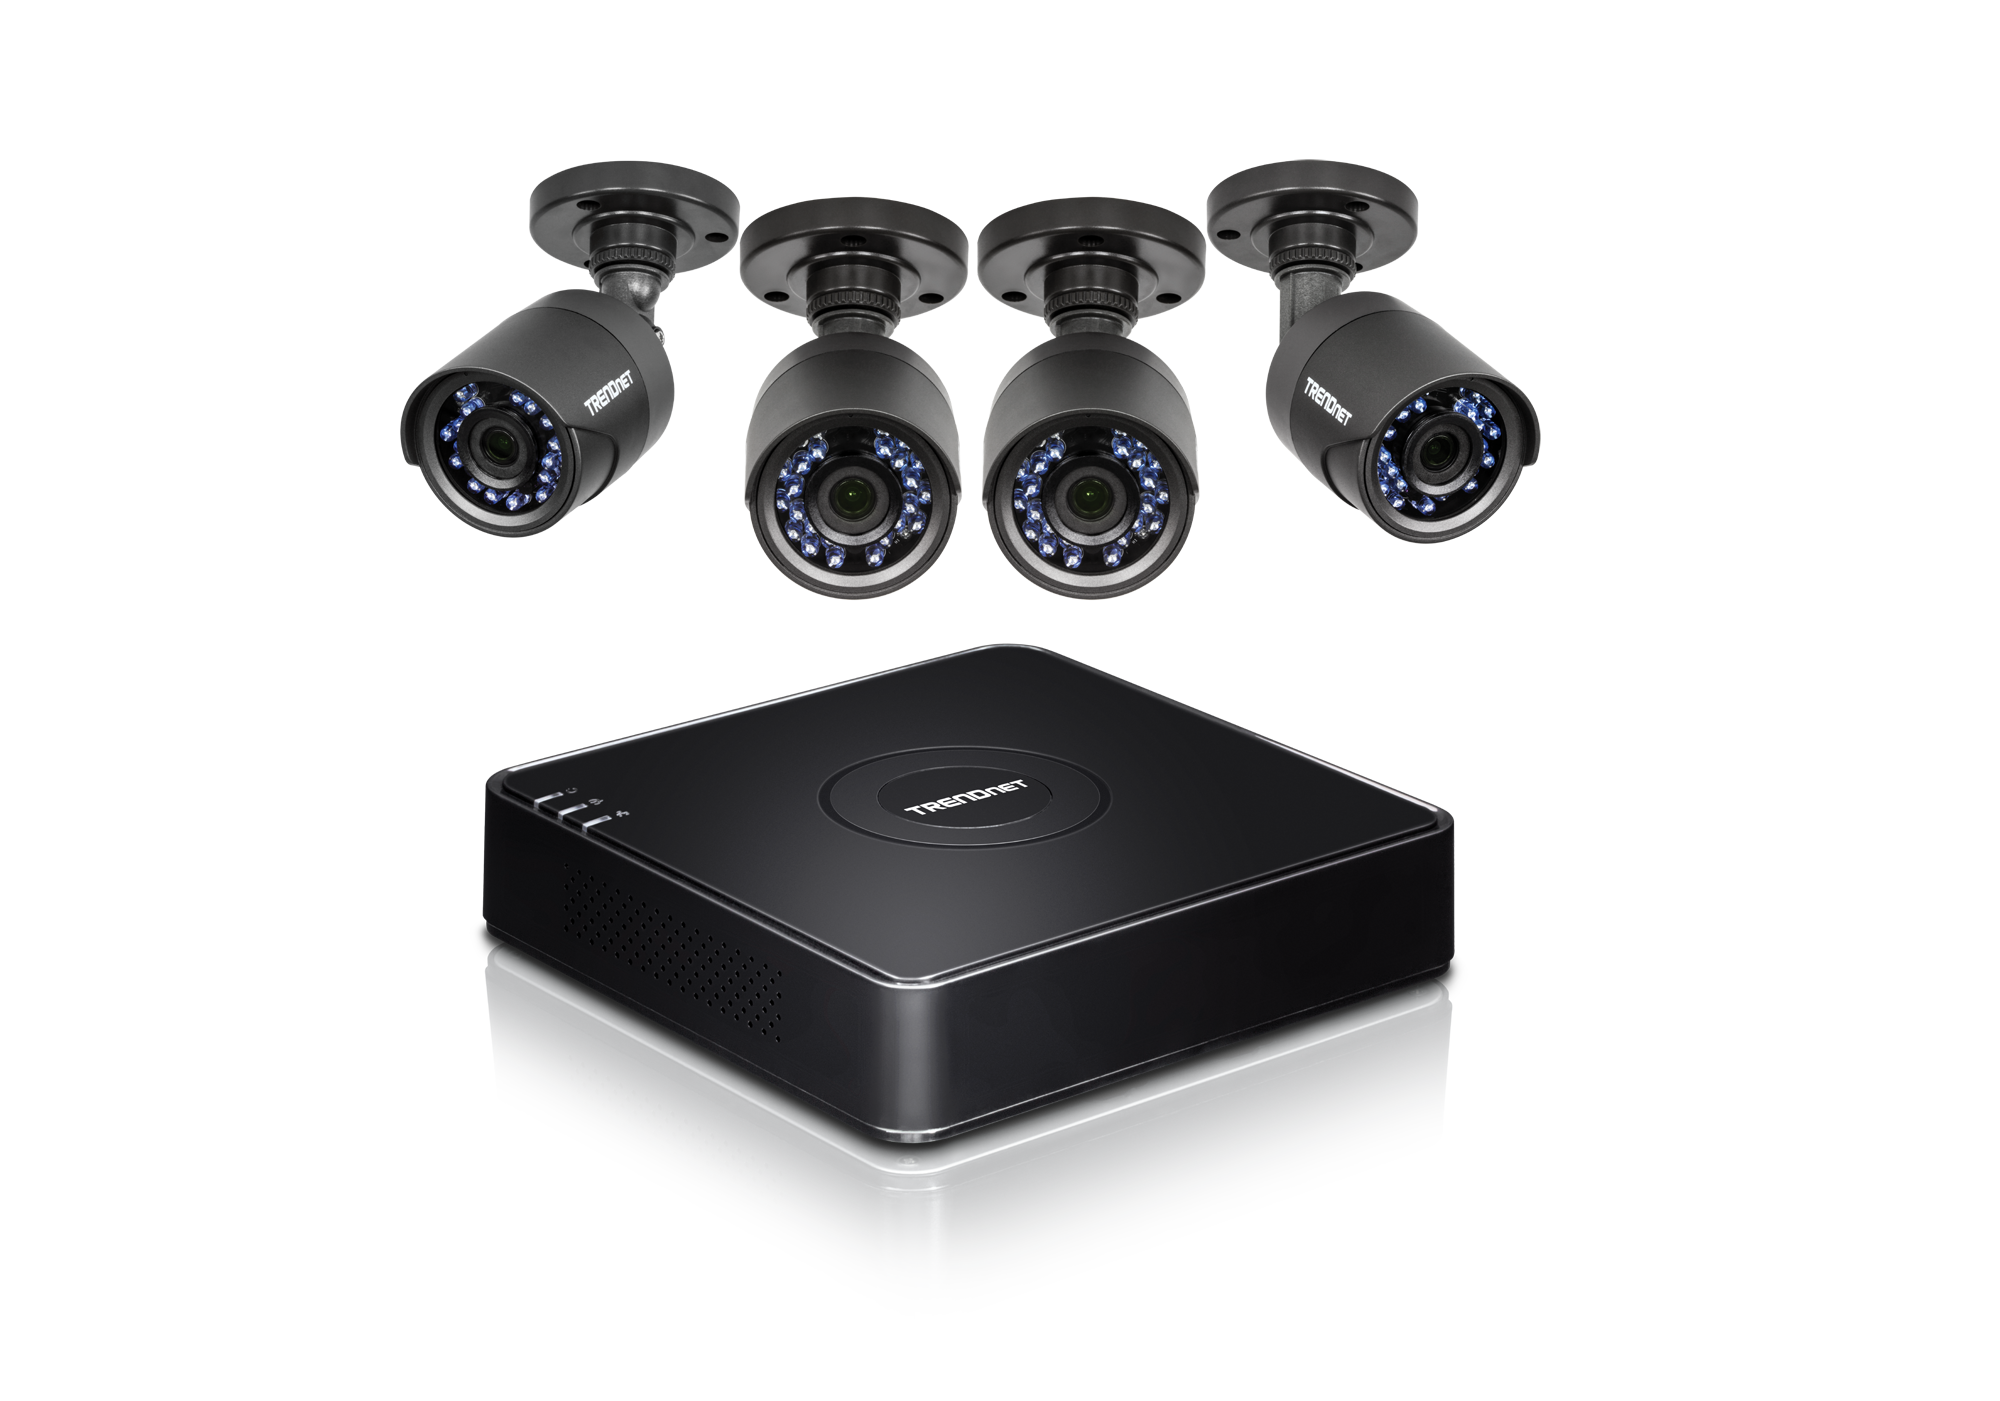 Регистратор чисел. Комплект видеонаблюдения CCTV-(8-Кам). Комплект камер видеонаблюдения CCTV Kit 5g. Комплект 4 камер видеонаблюдения CCTV Kit 5g. Видеорегистратор DVR видеонаблюдения.